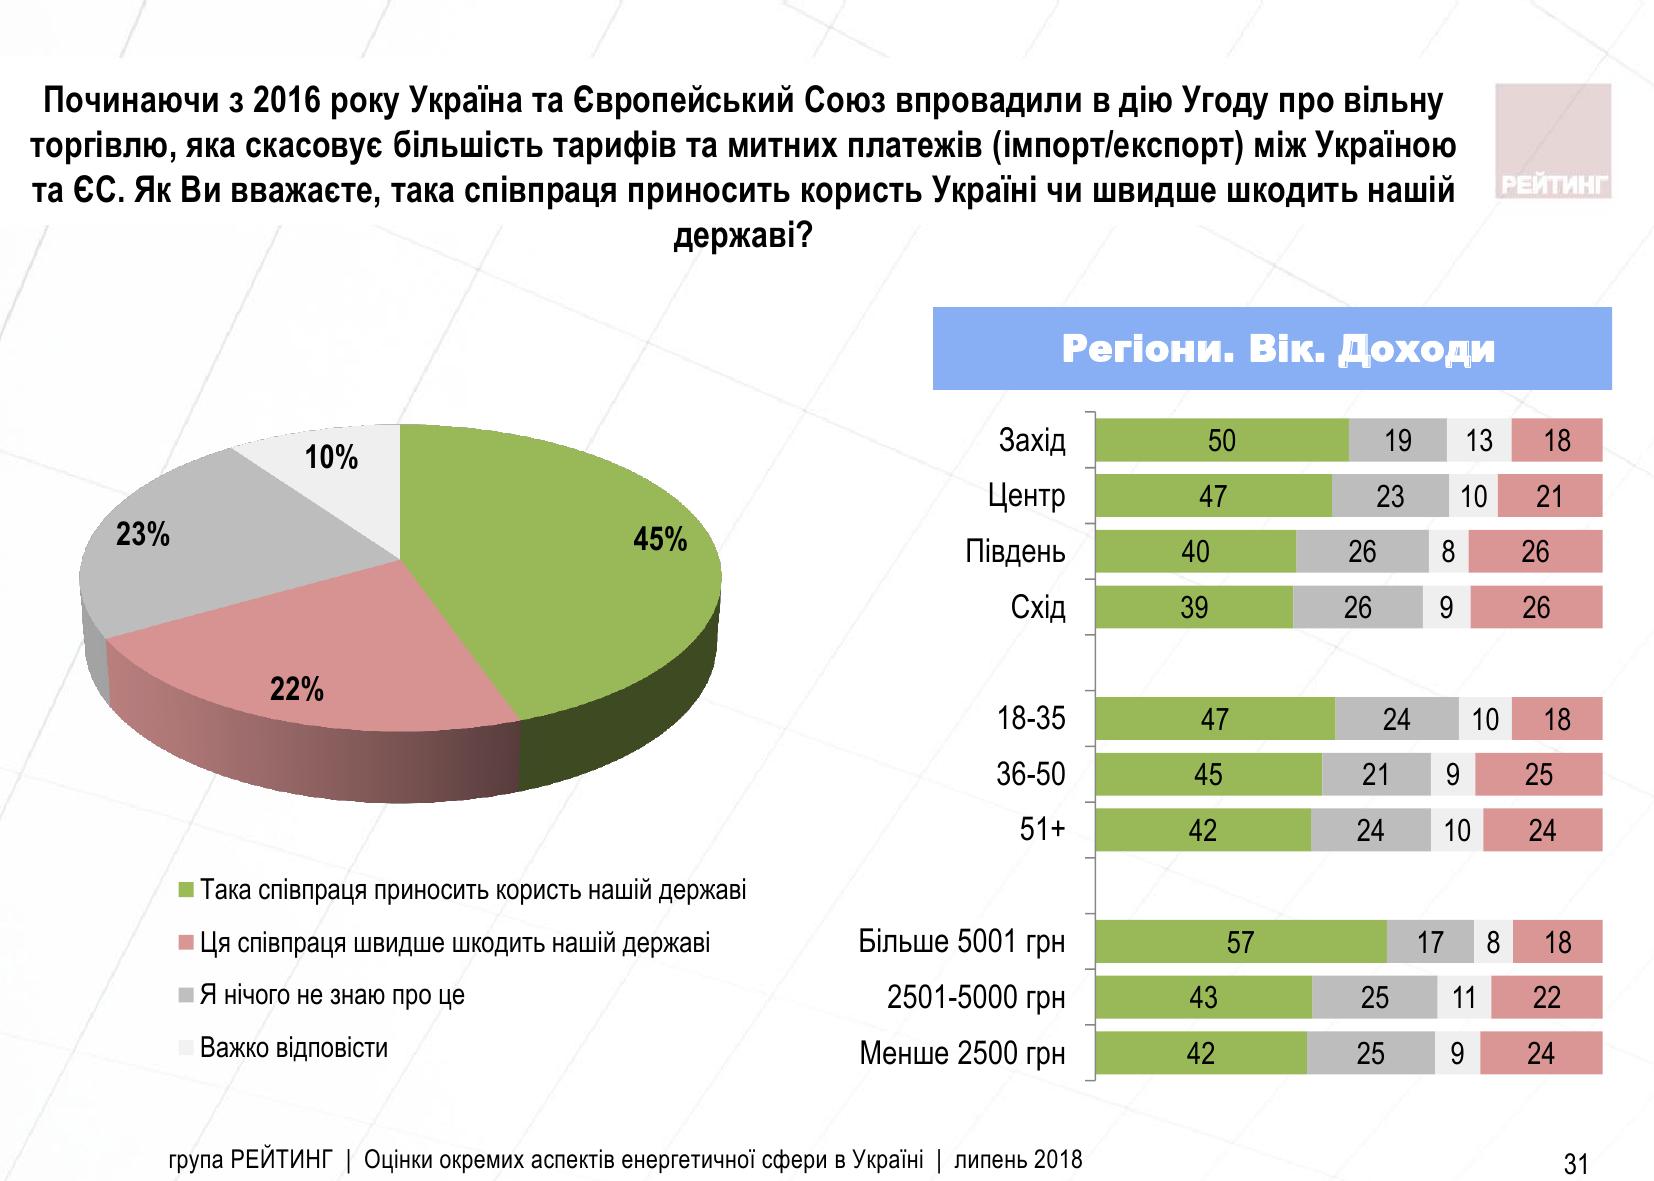 Украинцы согласны с тем, что Зона свободной торговли с ЕС приносит пользу Украине